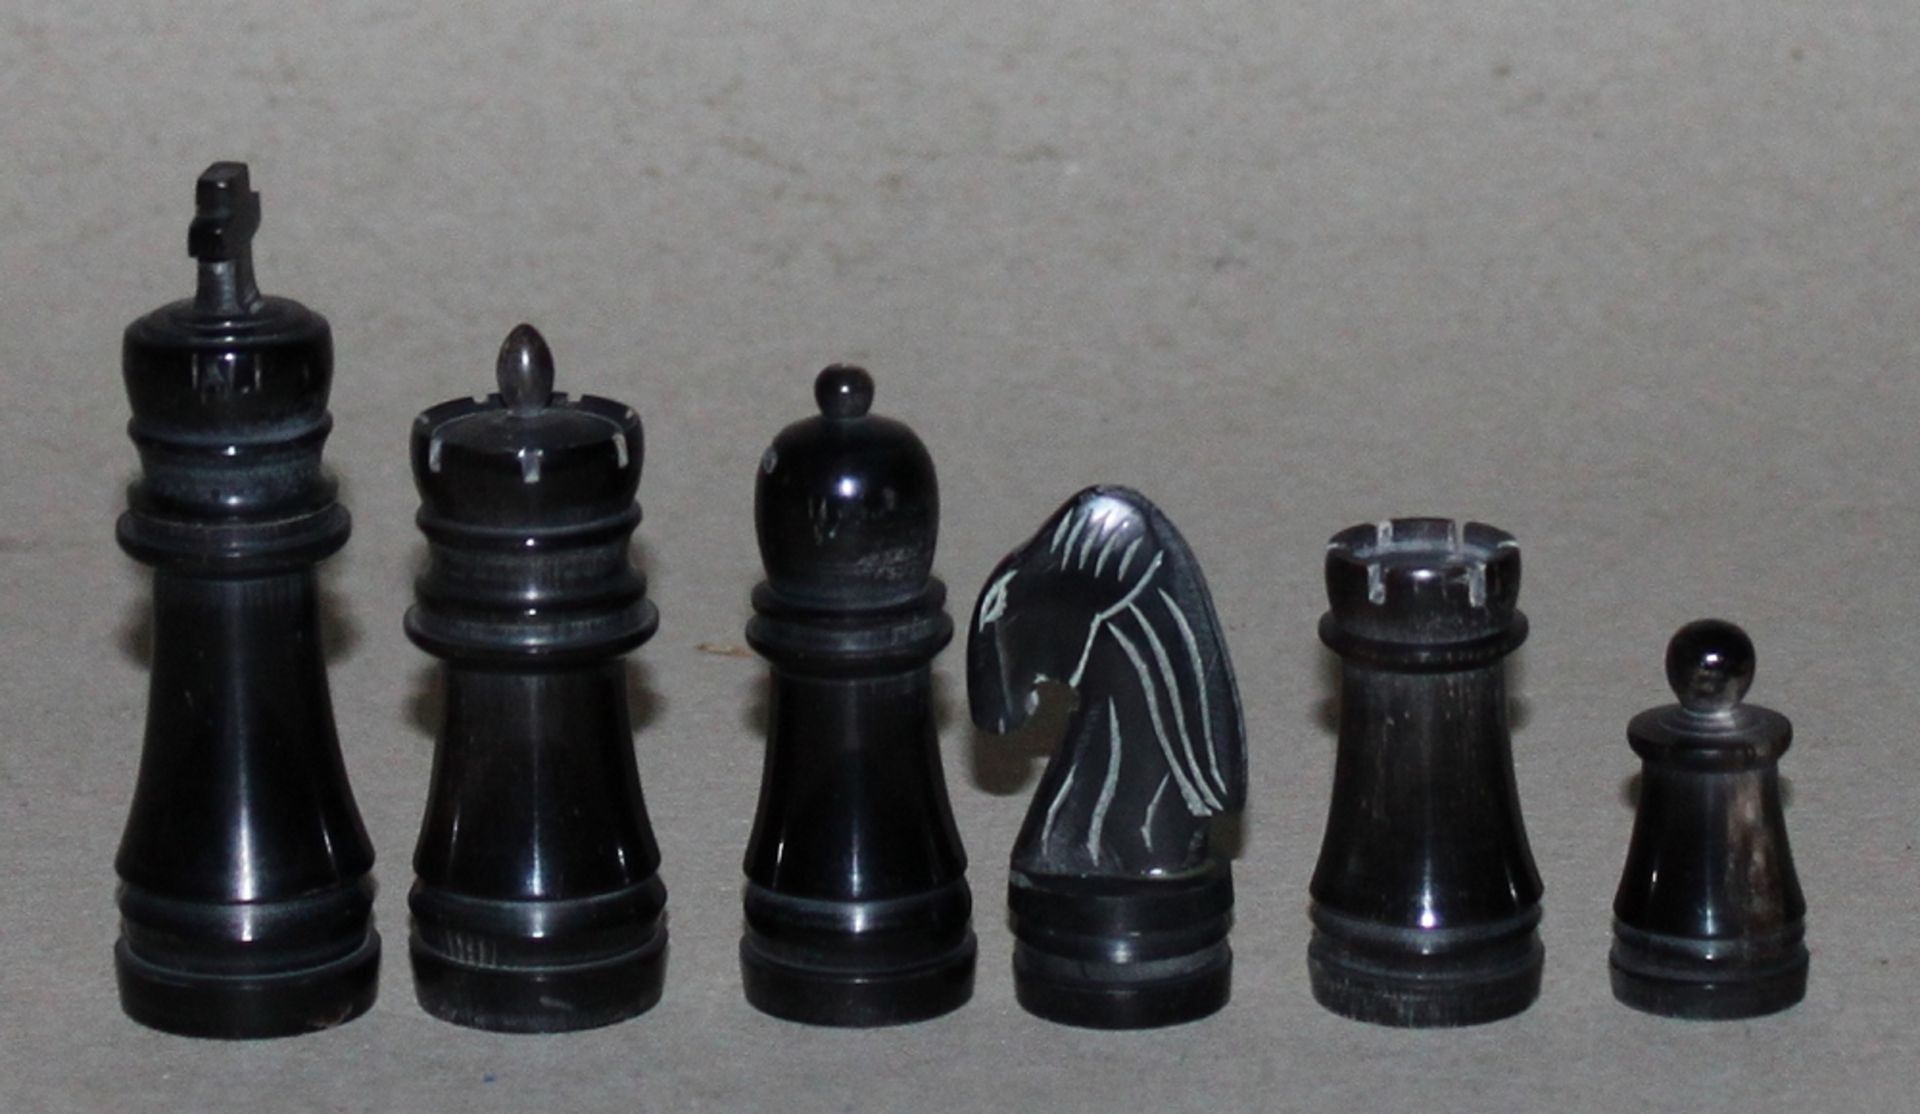 Europa. Schachfiguren aus Horn. Die eine Partei in schwarz (dunkel), die andere naturfarben. - Bild 3 aus 3